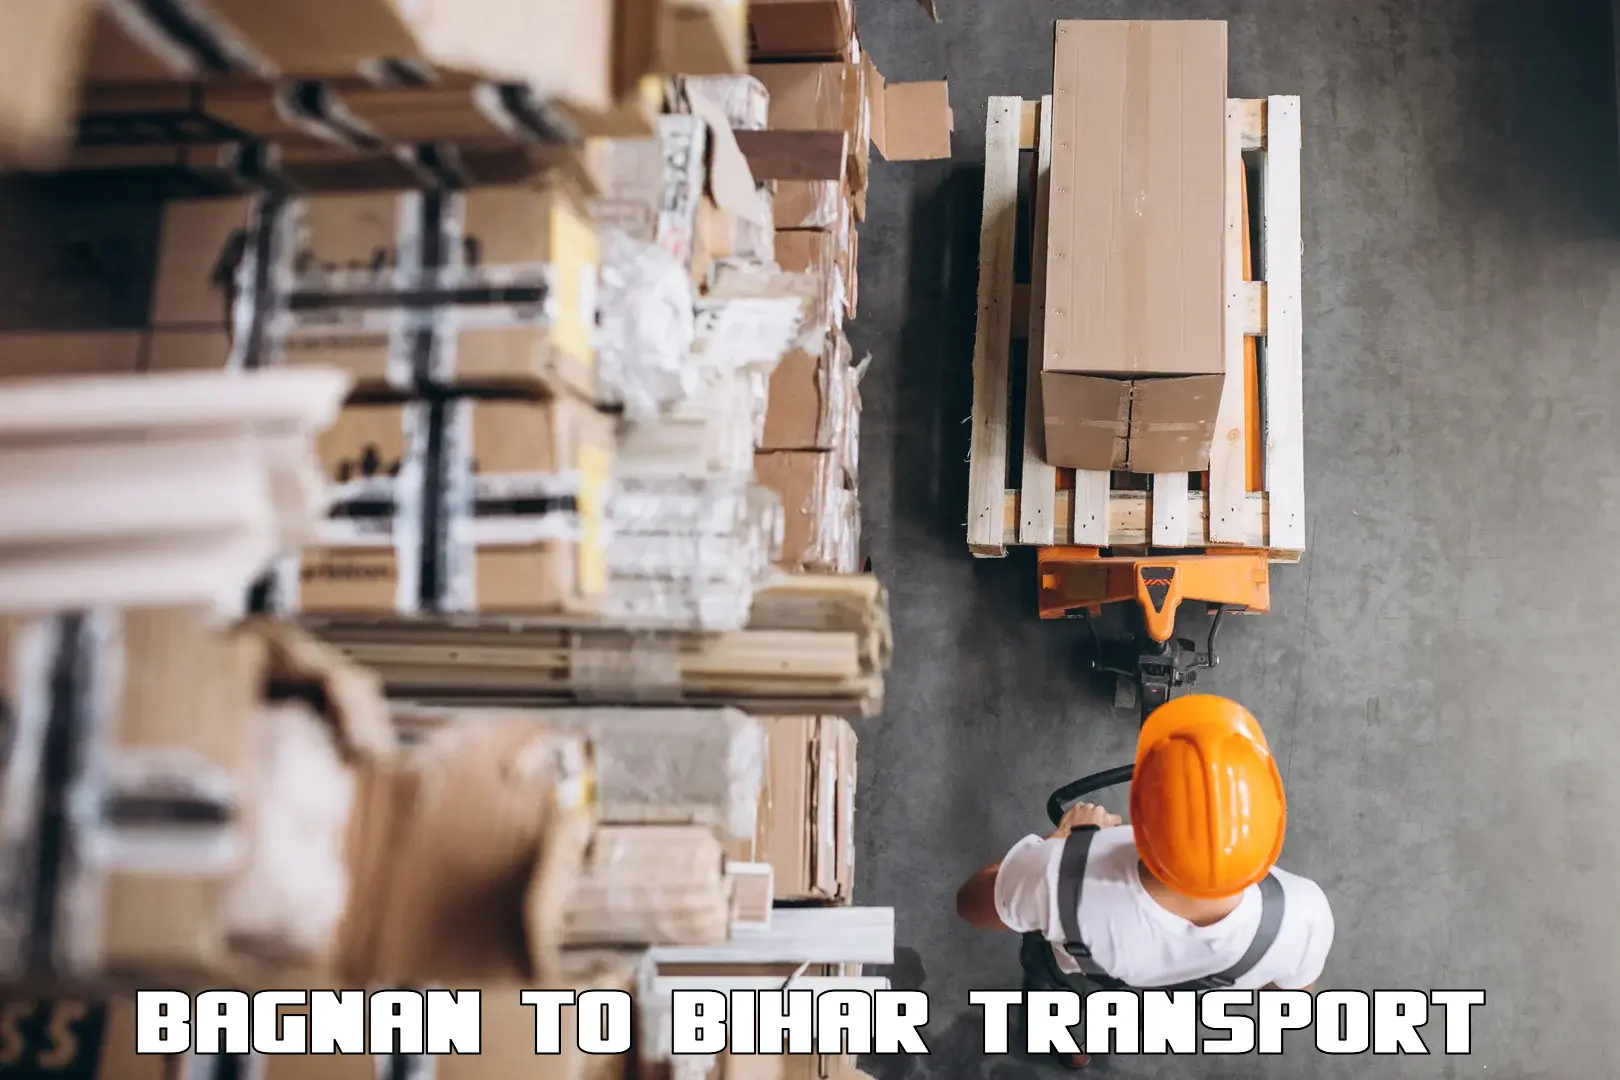 Furniture transport service Bagnan to Saran